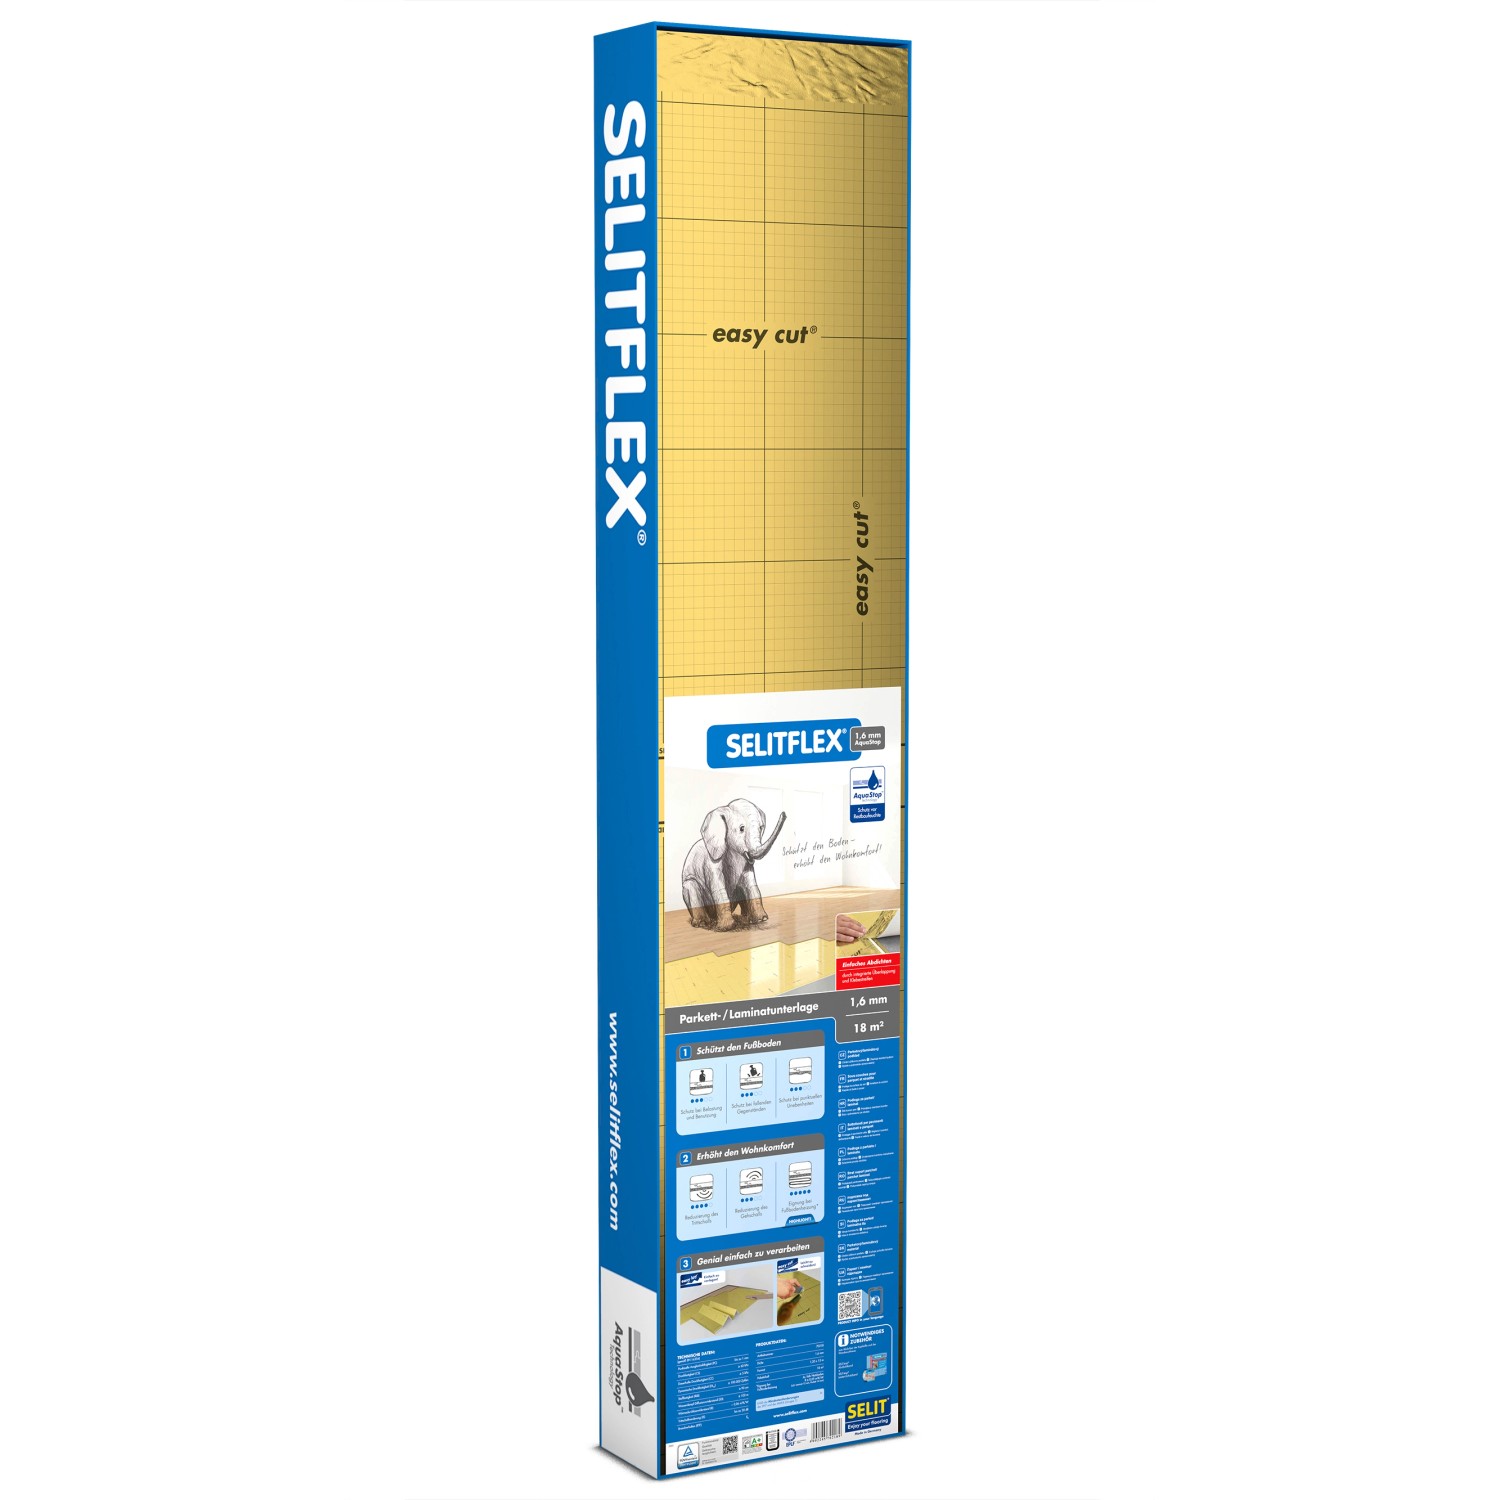 Selitflex® Parkett- und Laminatunterlage 1,6 mm 18 m² mit AquaStop von Selit